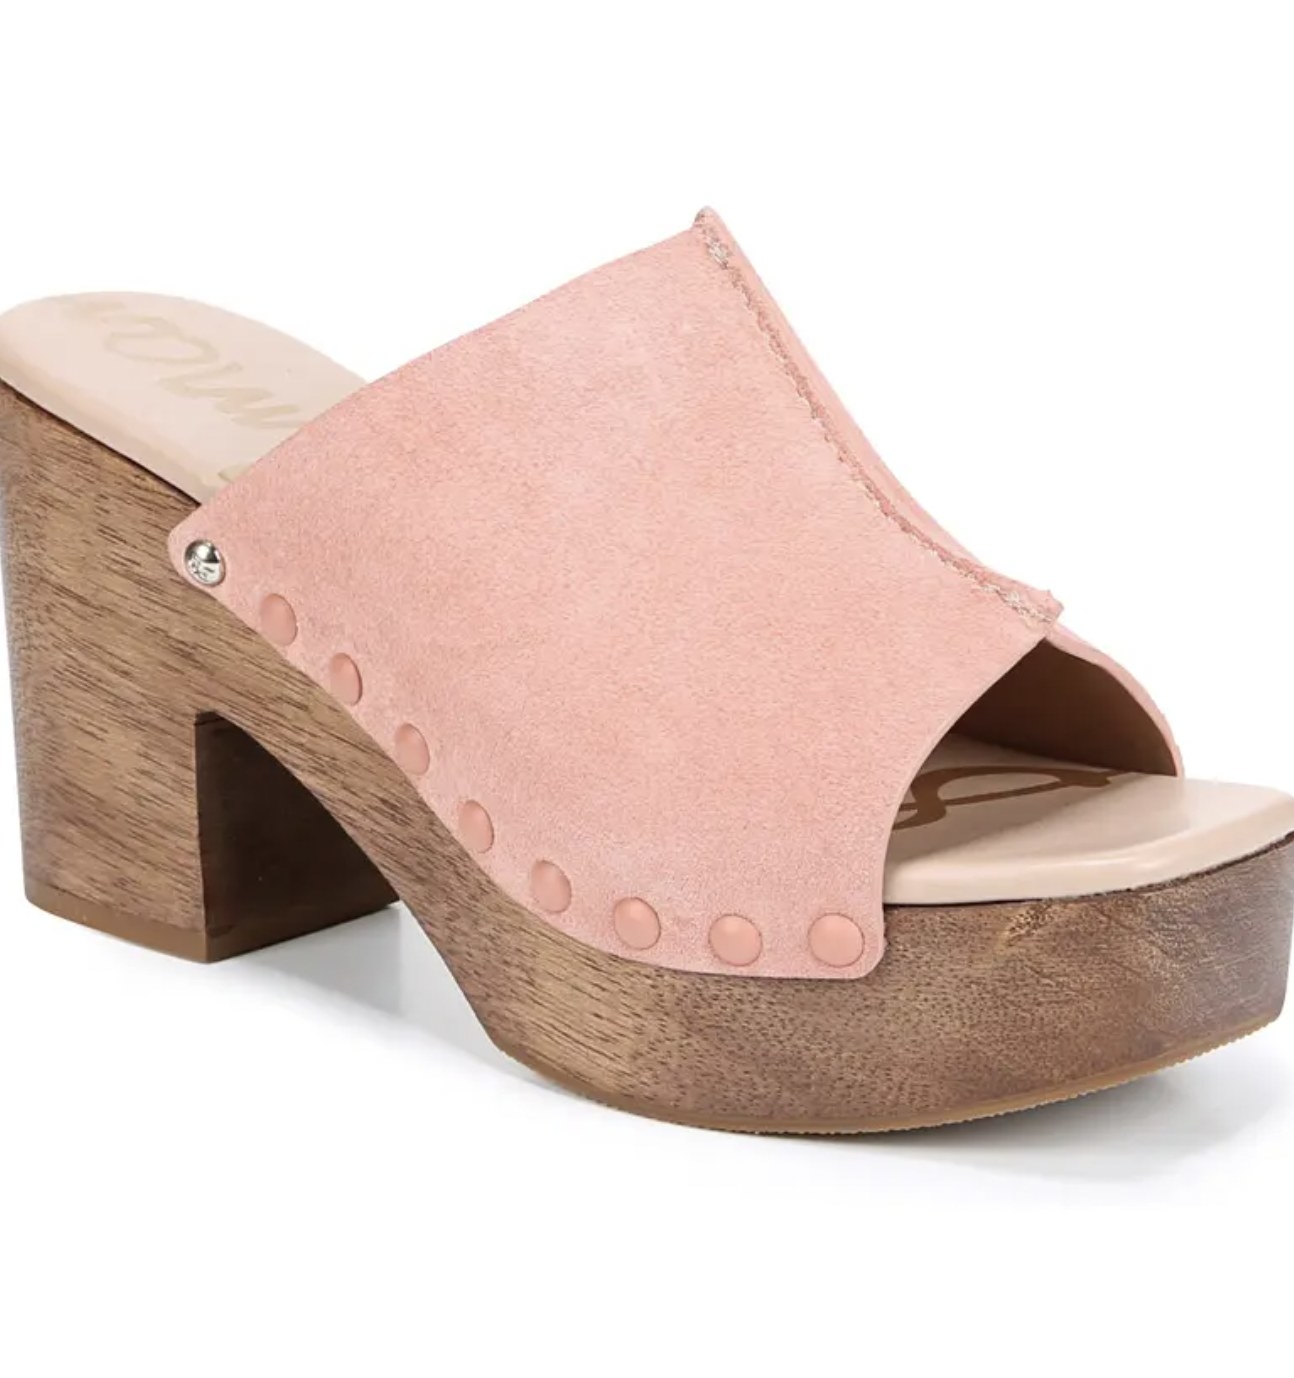 the pink wooden heeled platform clog-style sandal